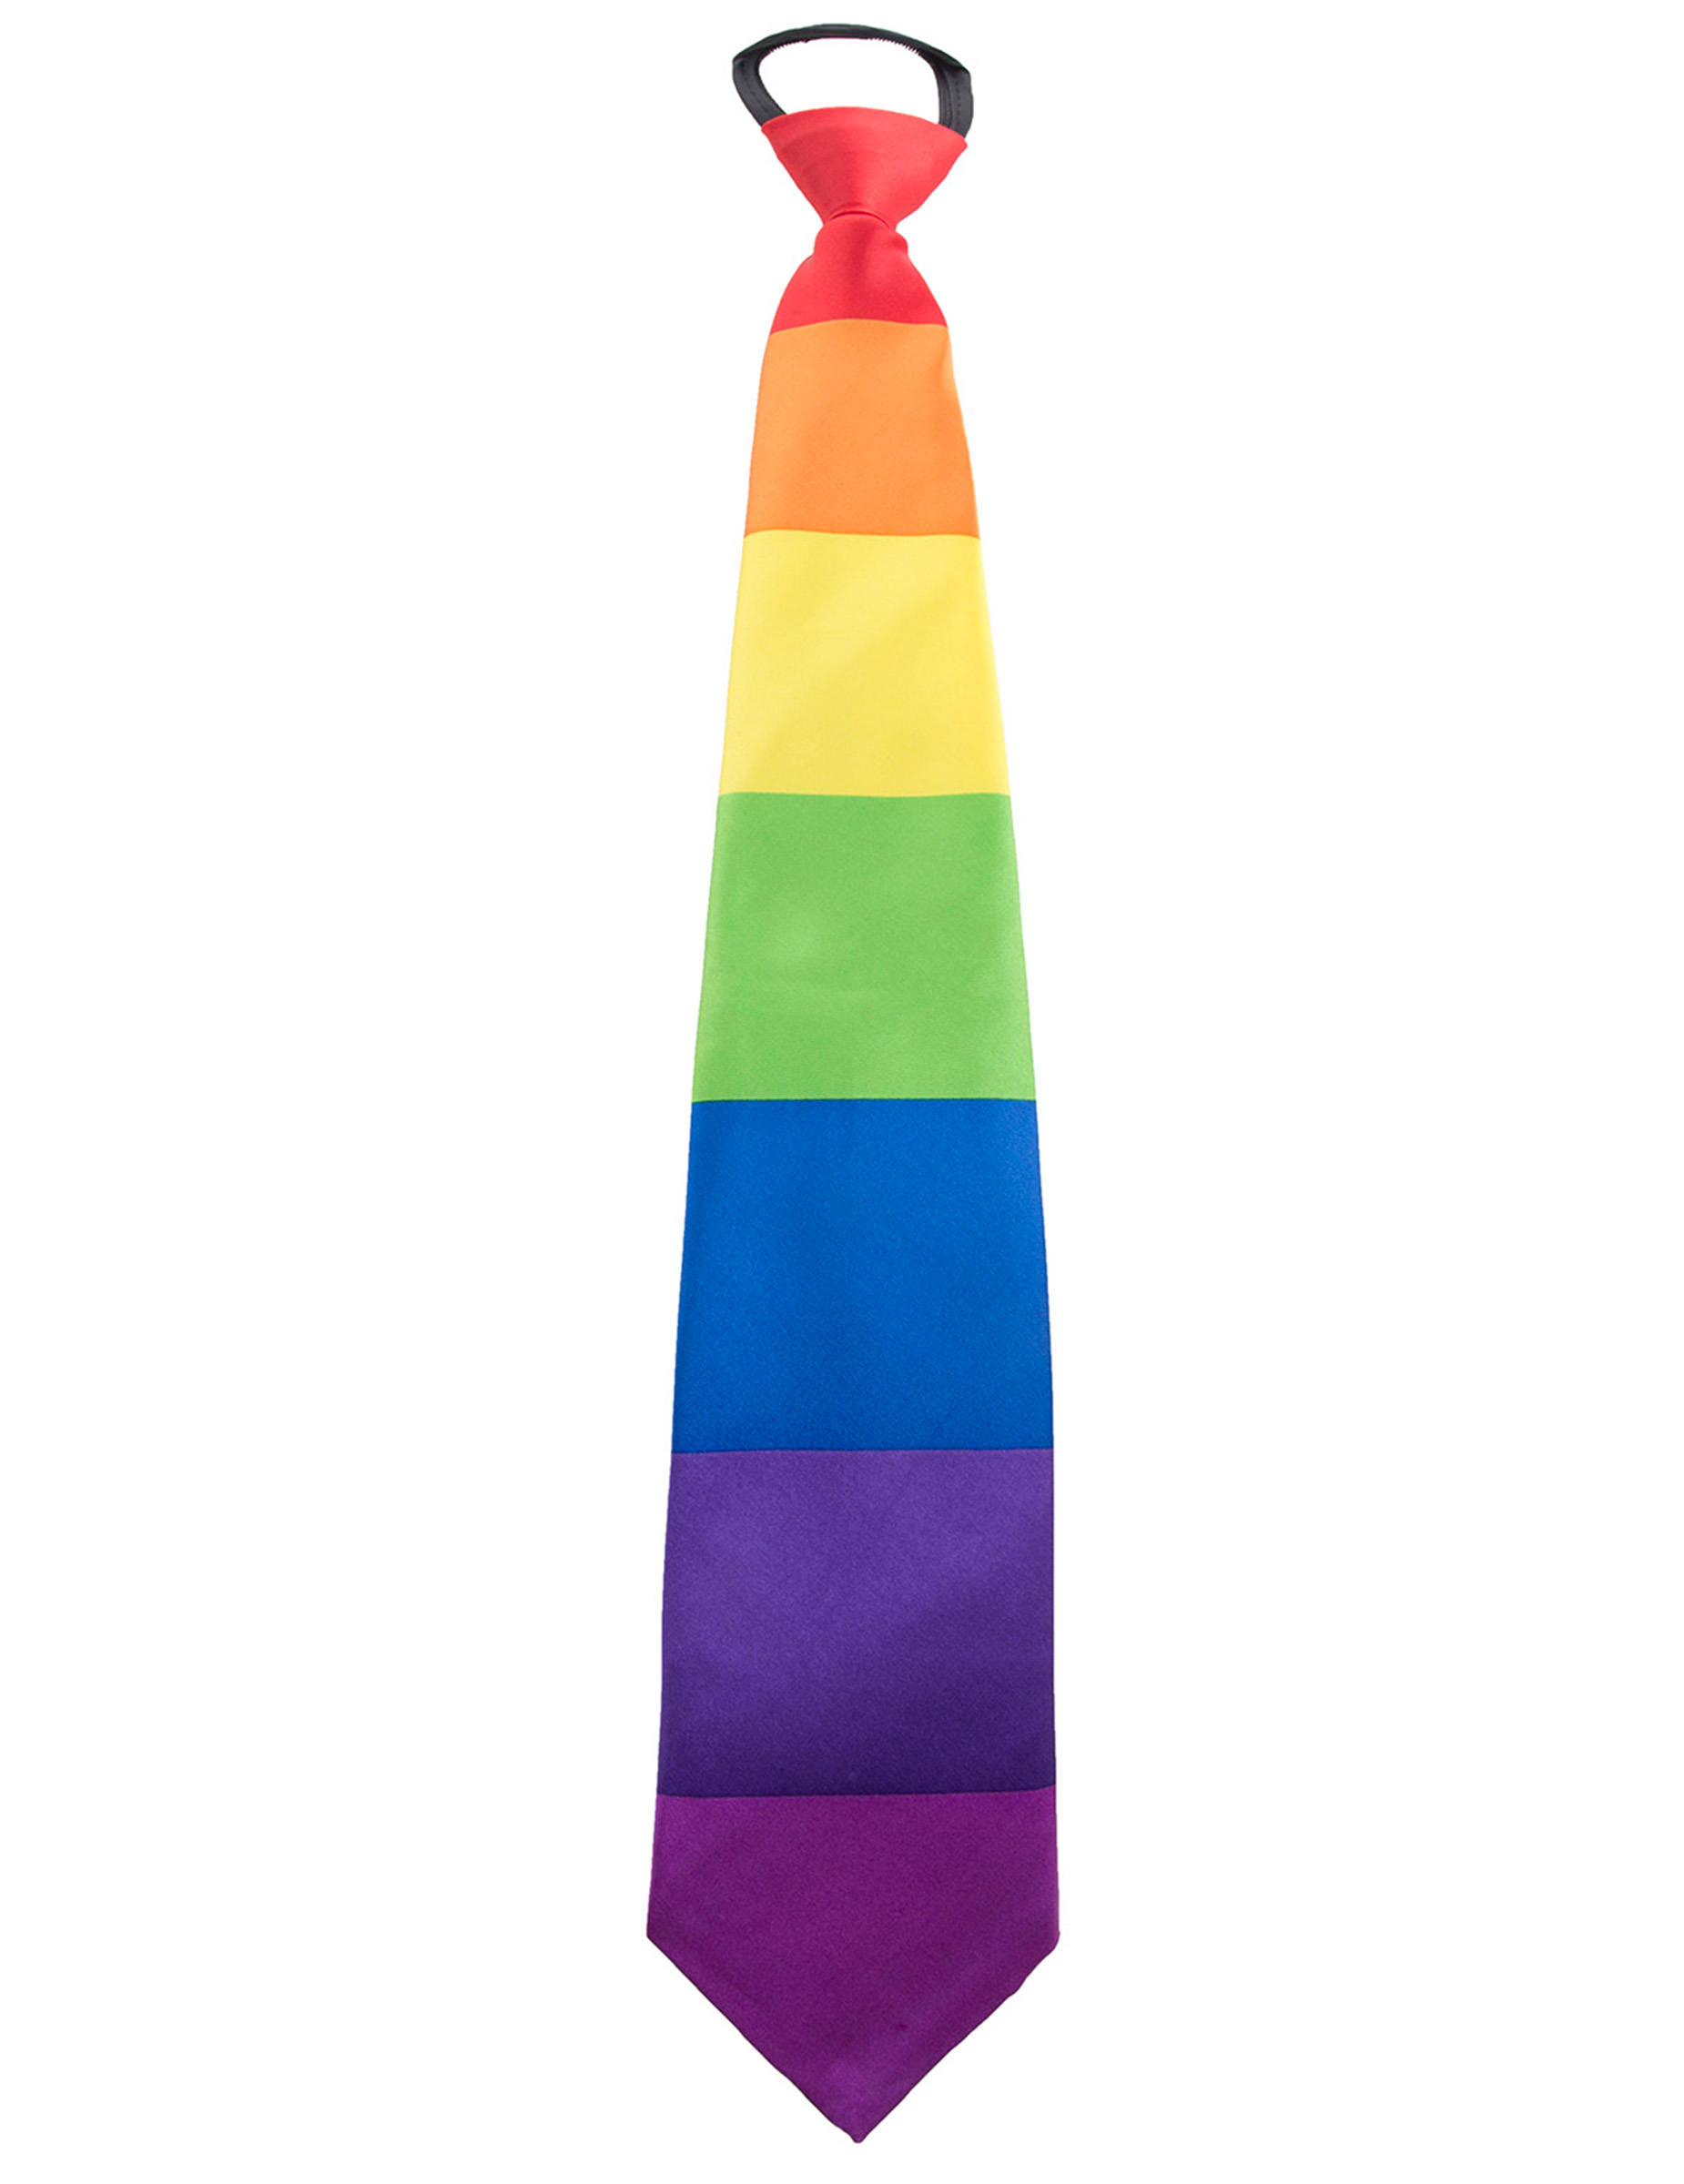 Regenbogen-Krawatte Accessoire CSD bunt von ESPA